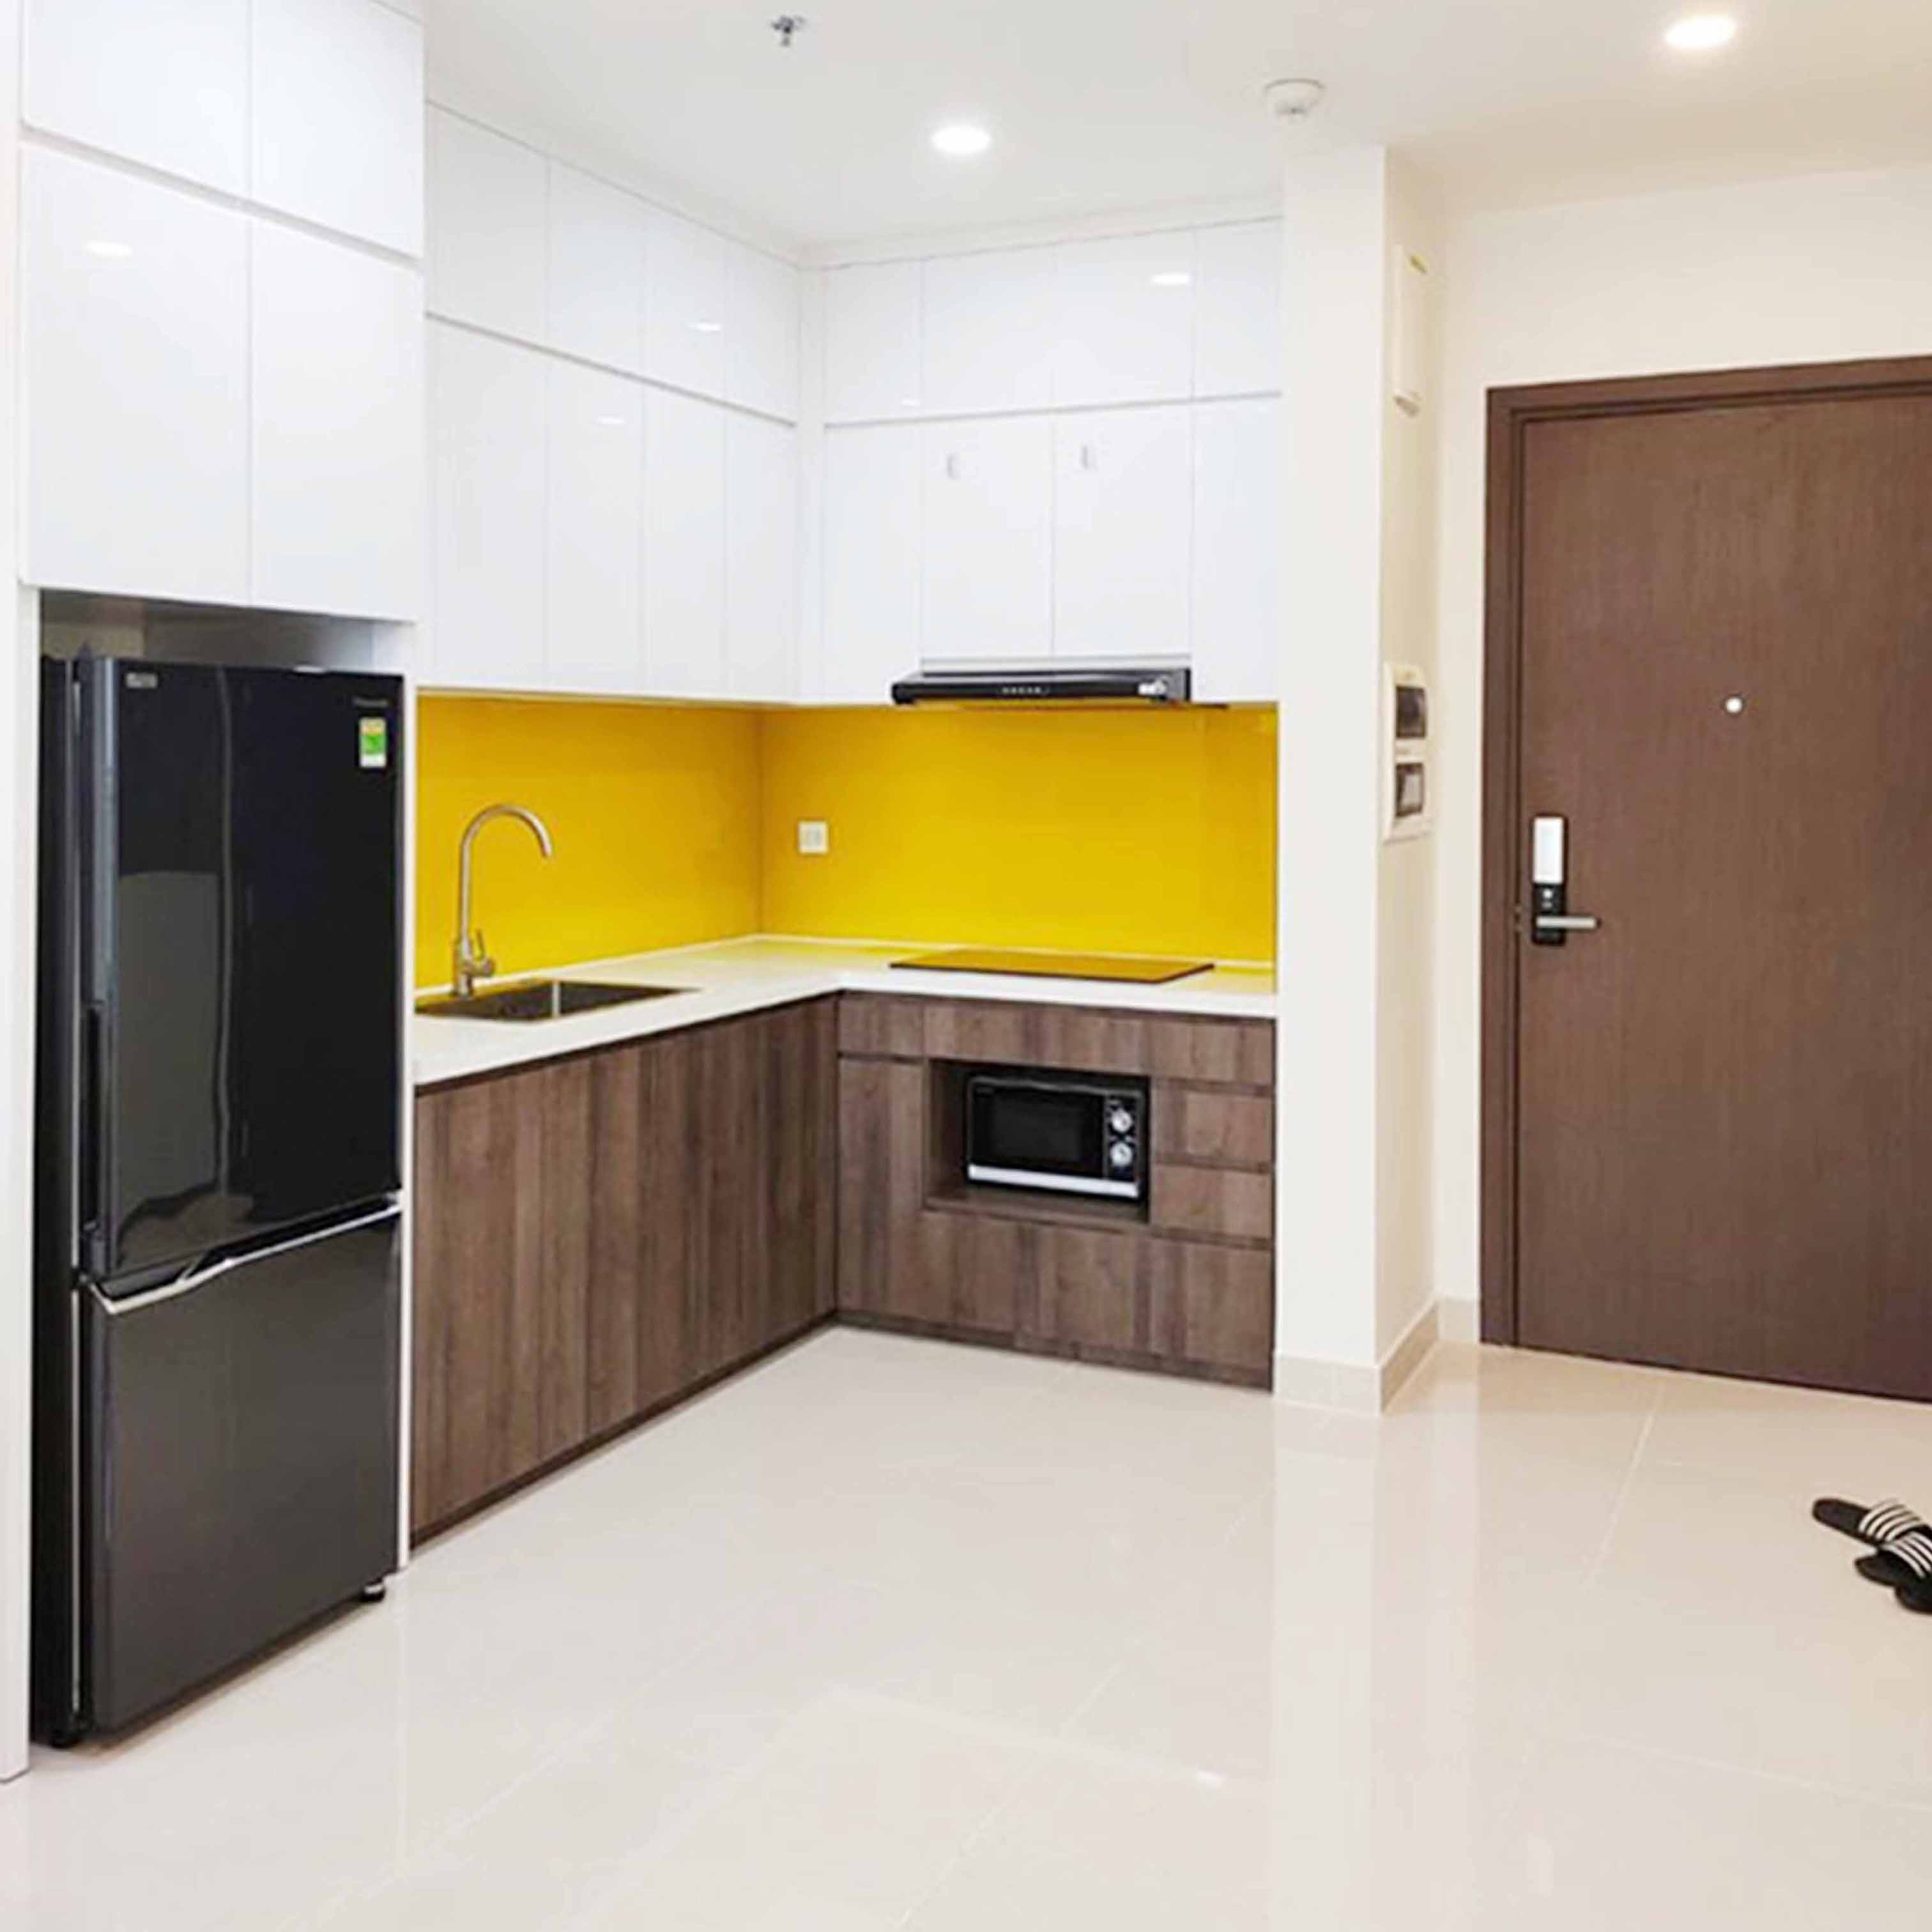 Thi công và thiết kế căn hộ chung cư tại Mễ Trì, Mỹ Đình, Hà Nội - TK17LHFU